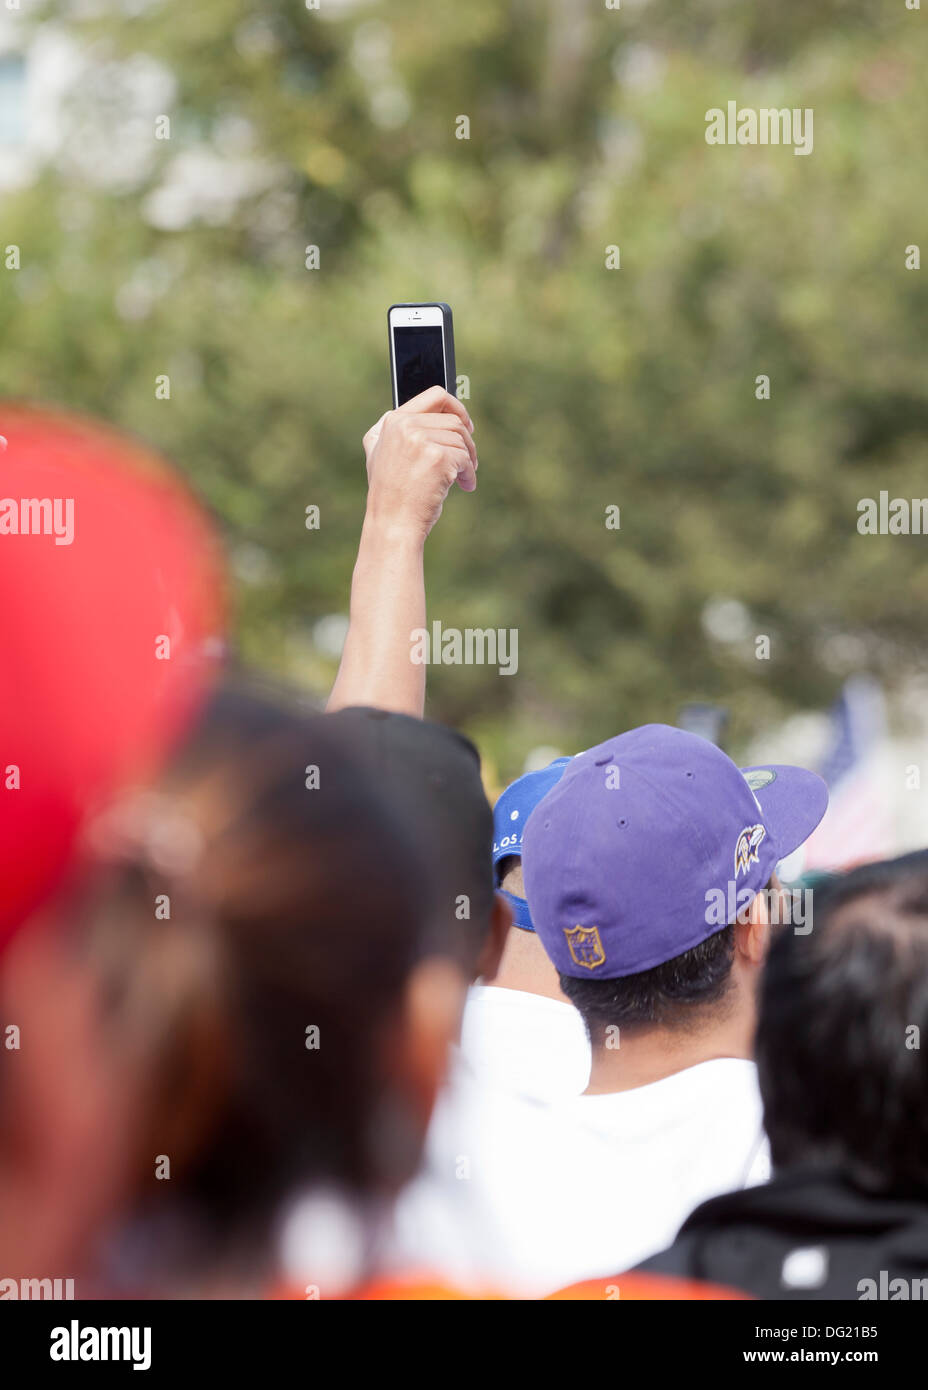 Mann mit einem iPhone Video tape ein outdoor-Event in Menschenmenge Stockfoto